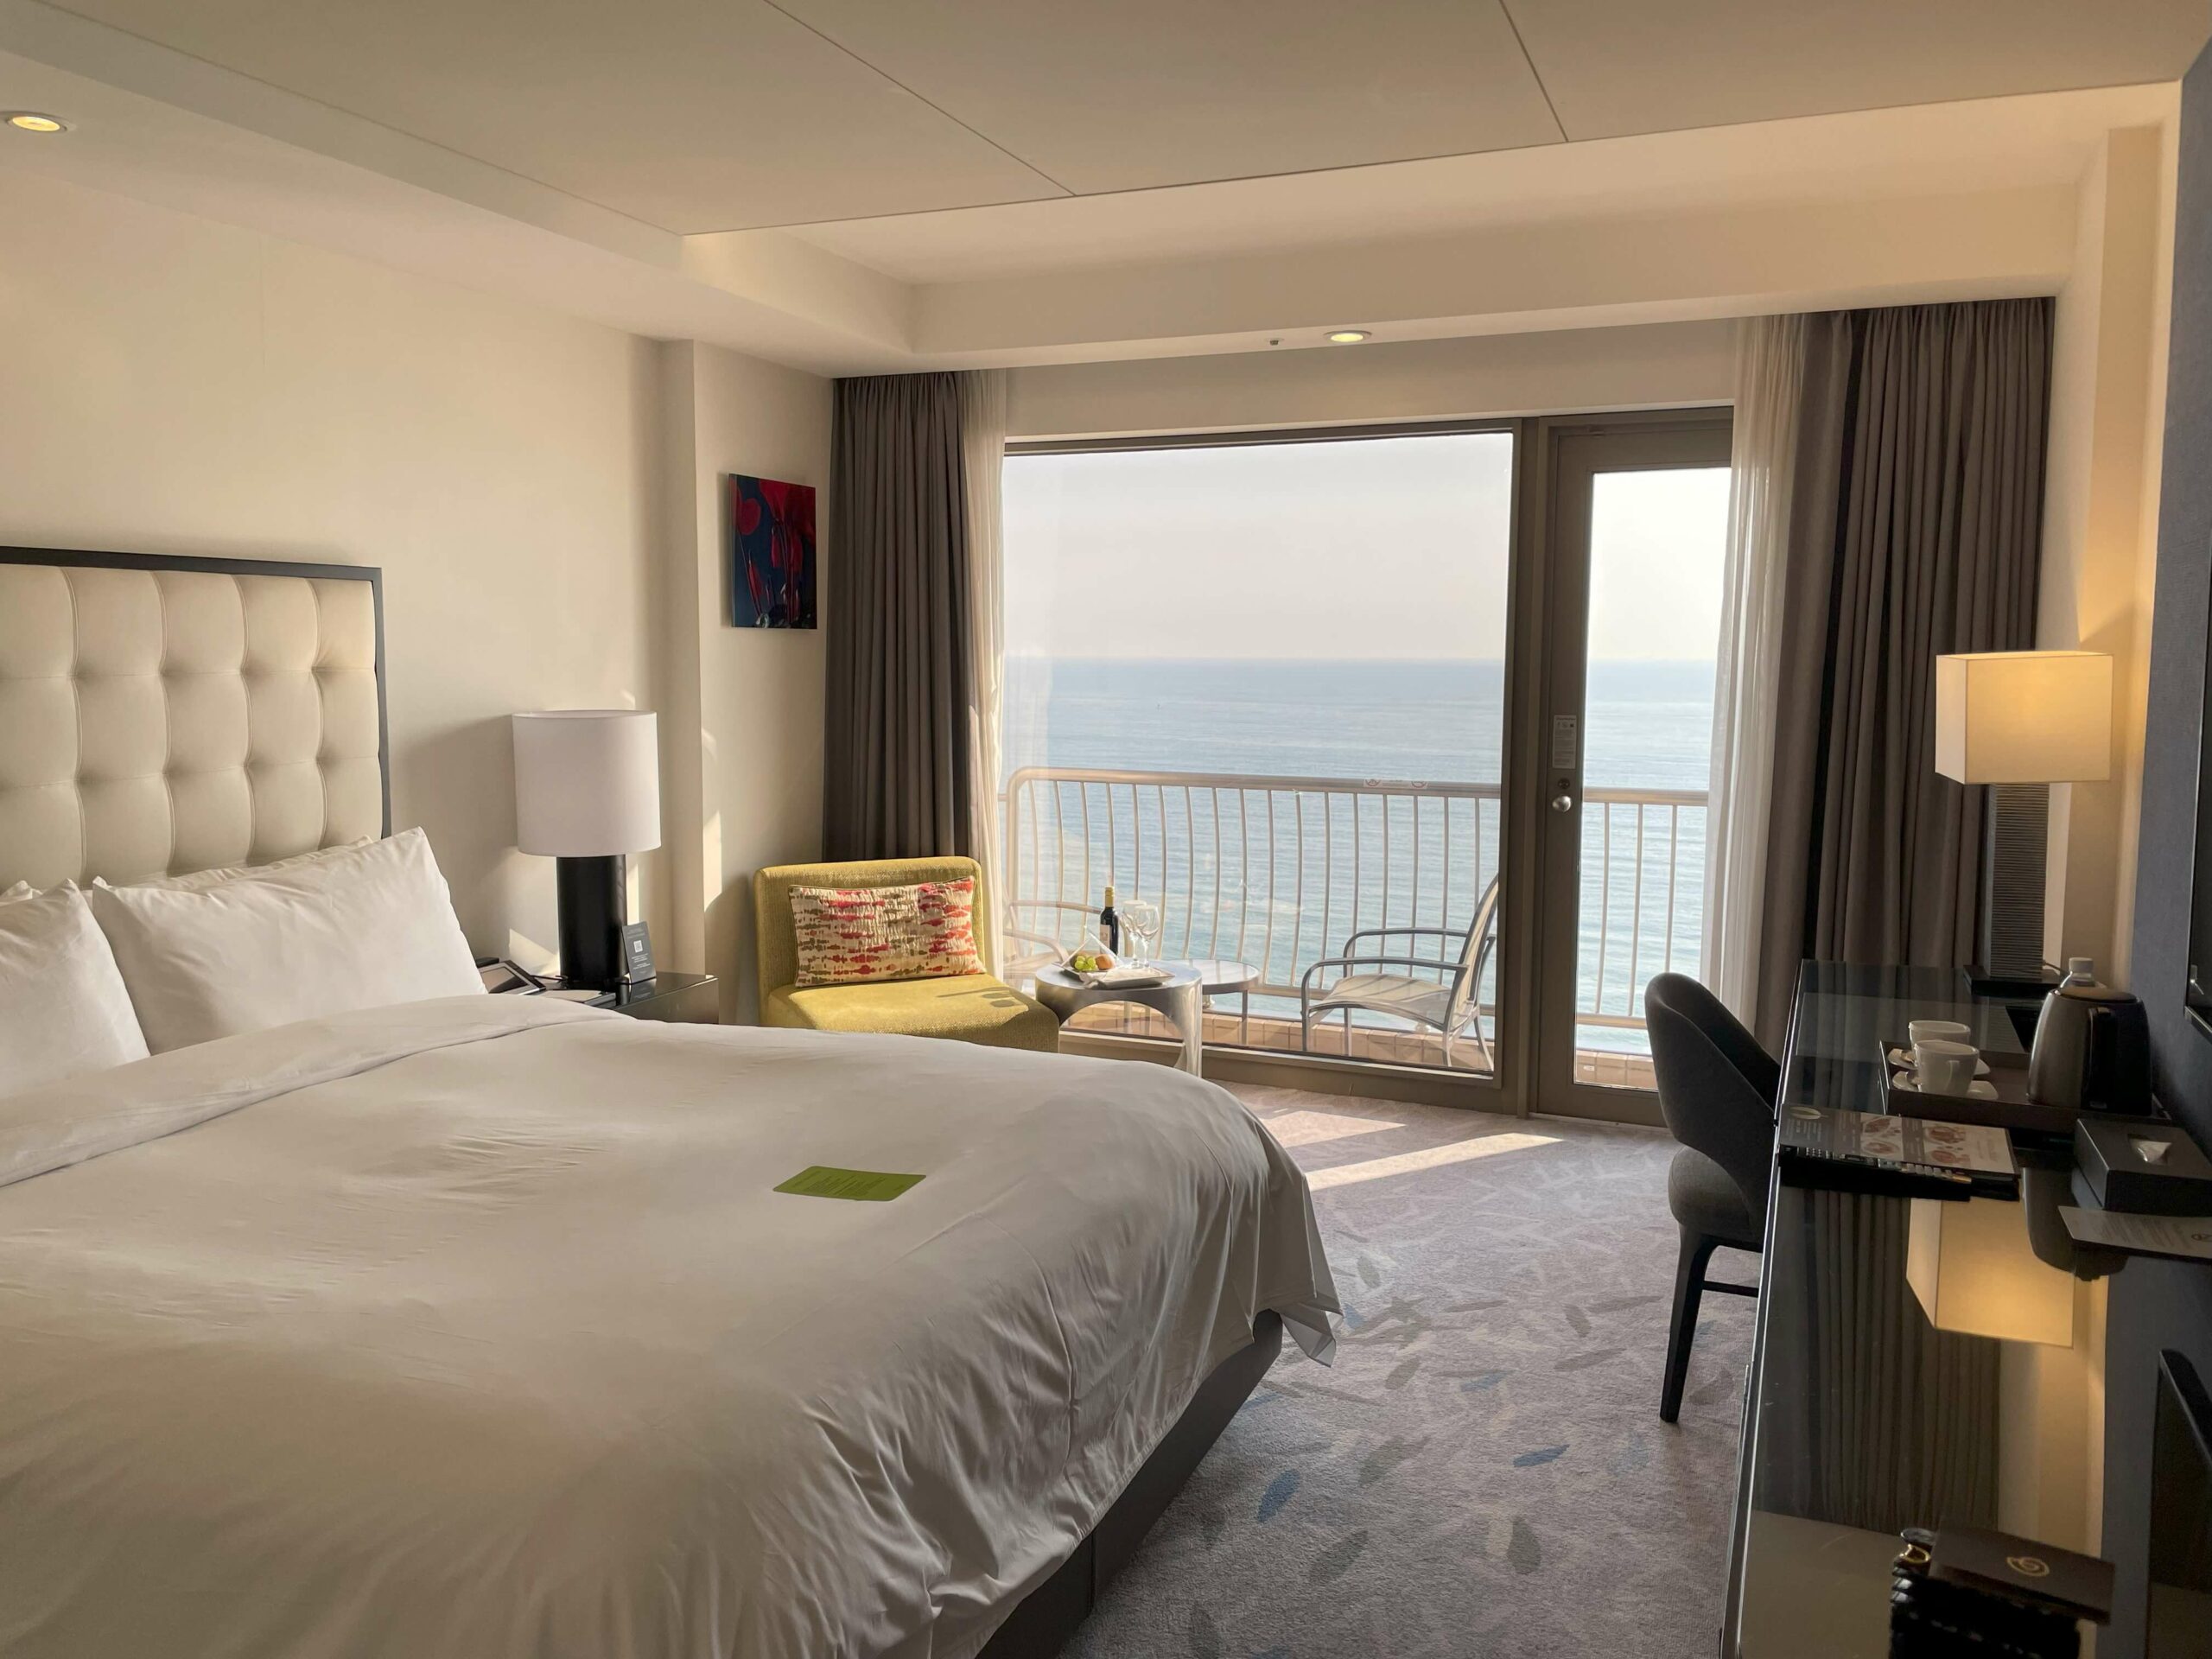 파라다이스 호텔 부산 바다전망 객실의 침대와 테이블